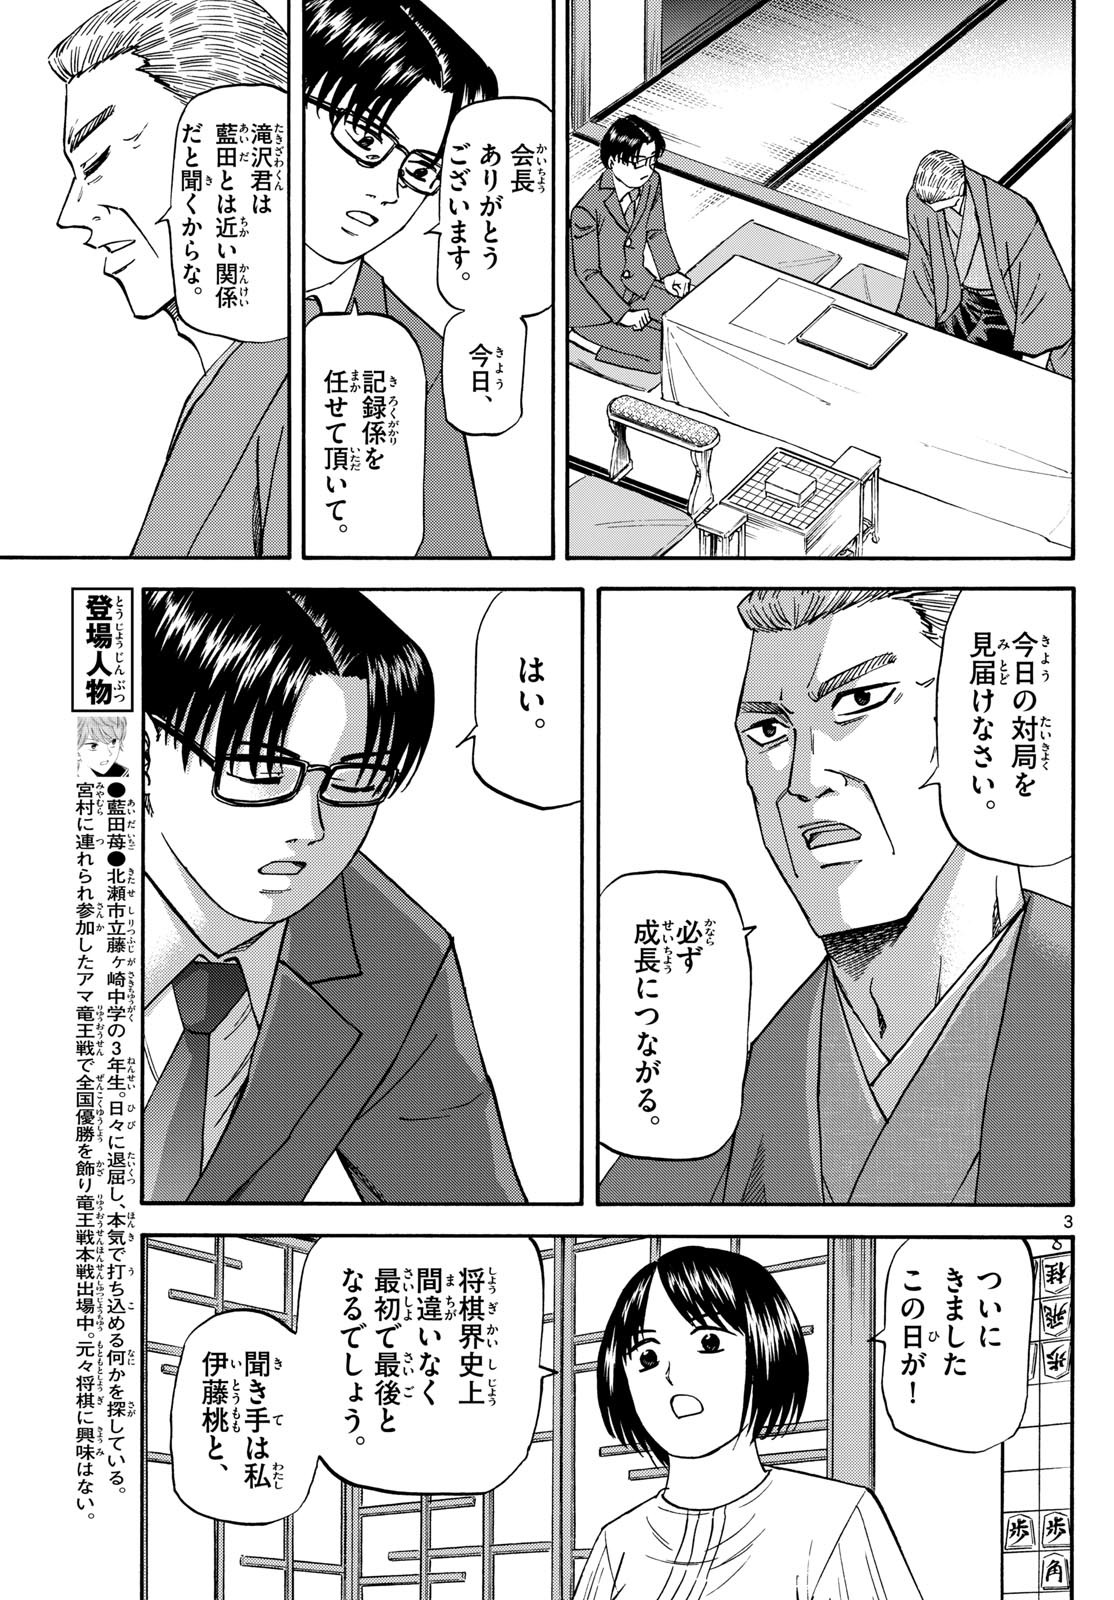 Ryu-to-Ichigo - Chapter 175 - Page 3